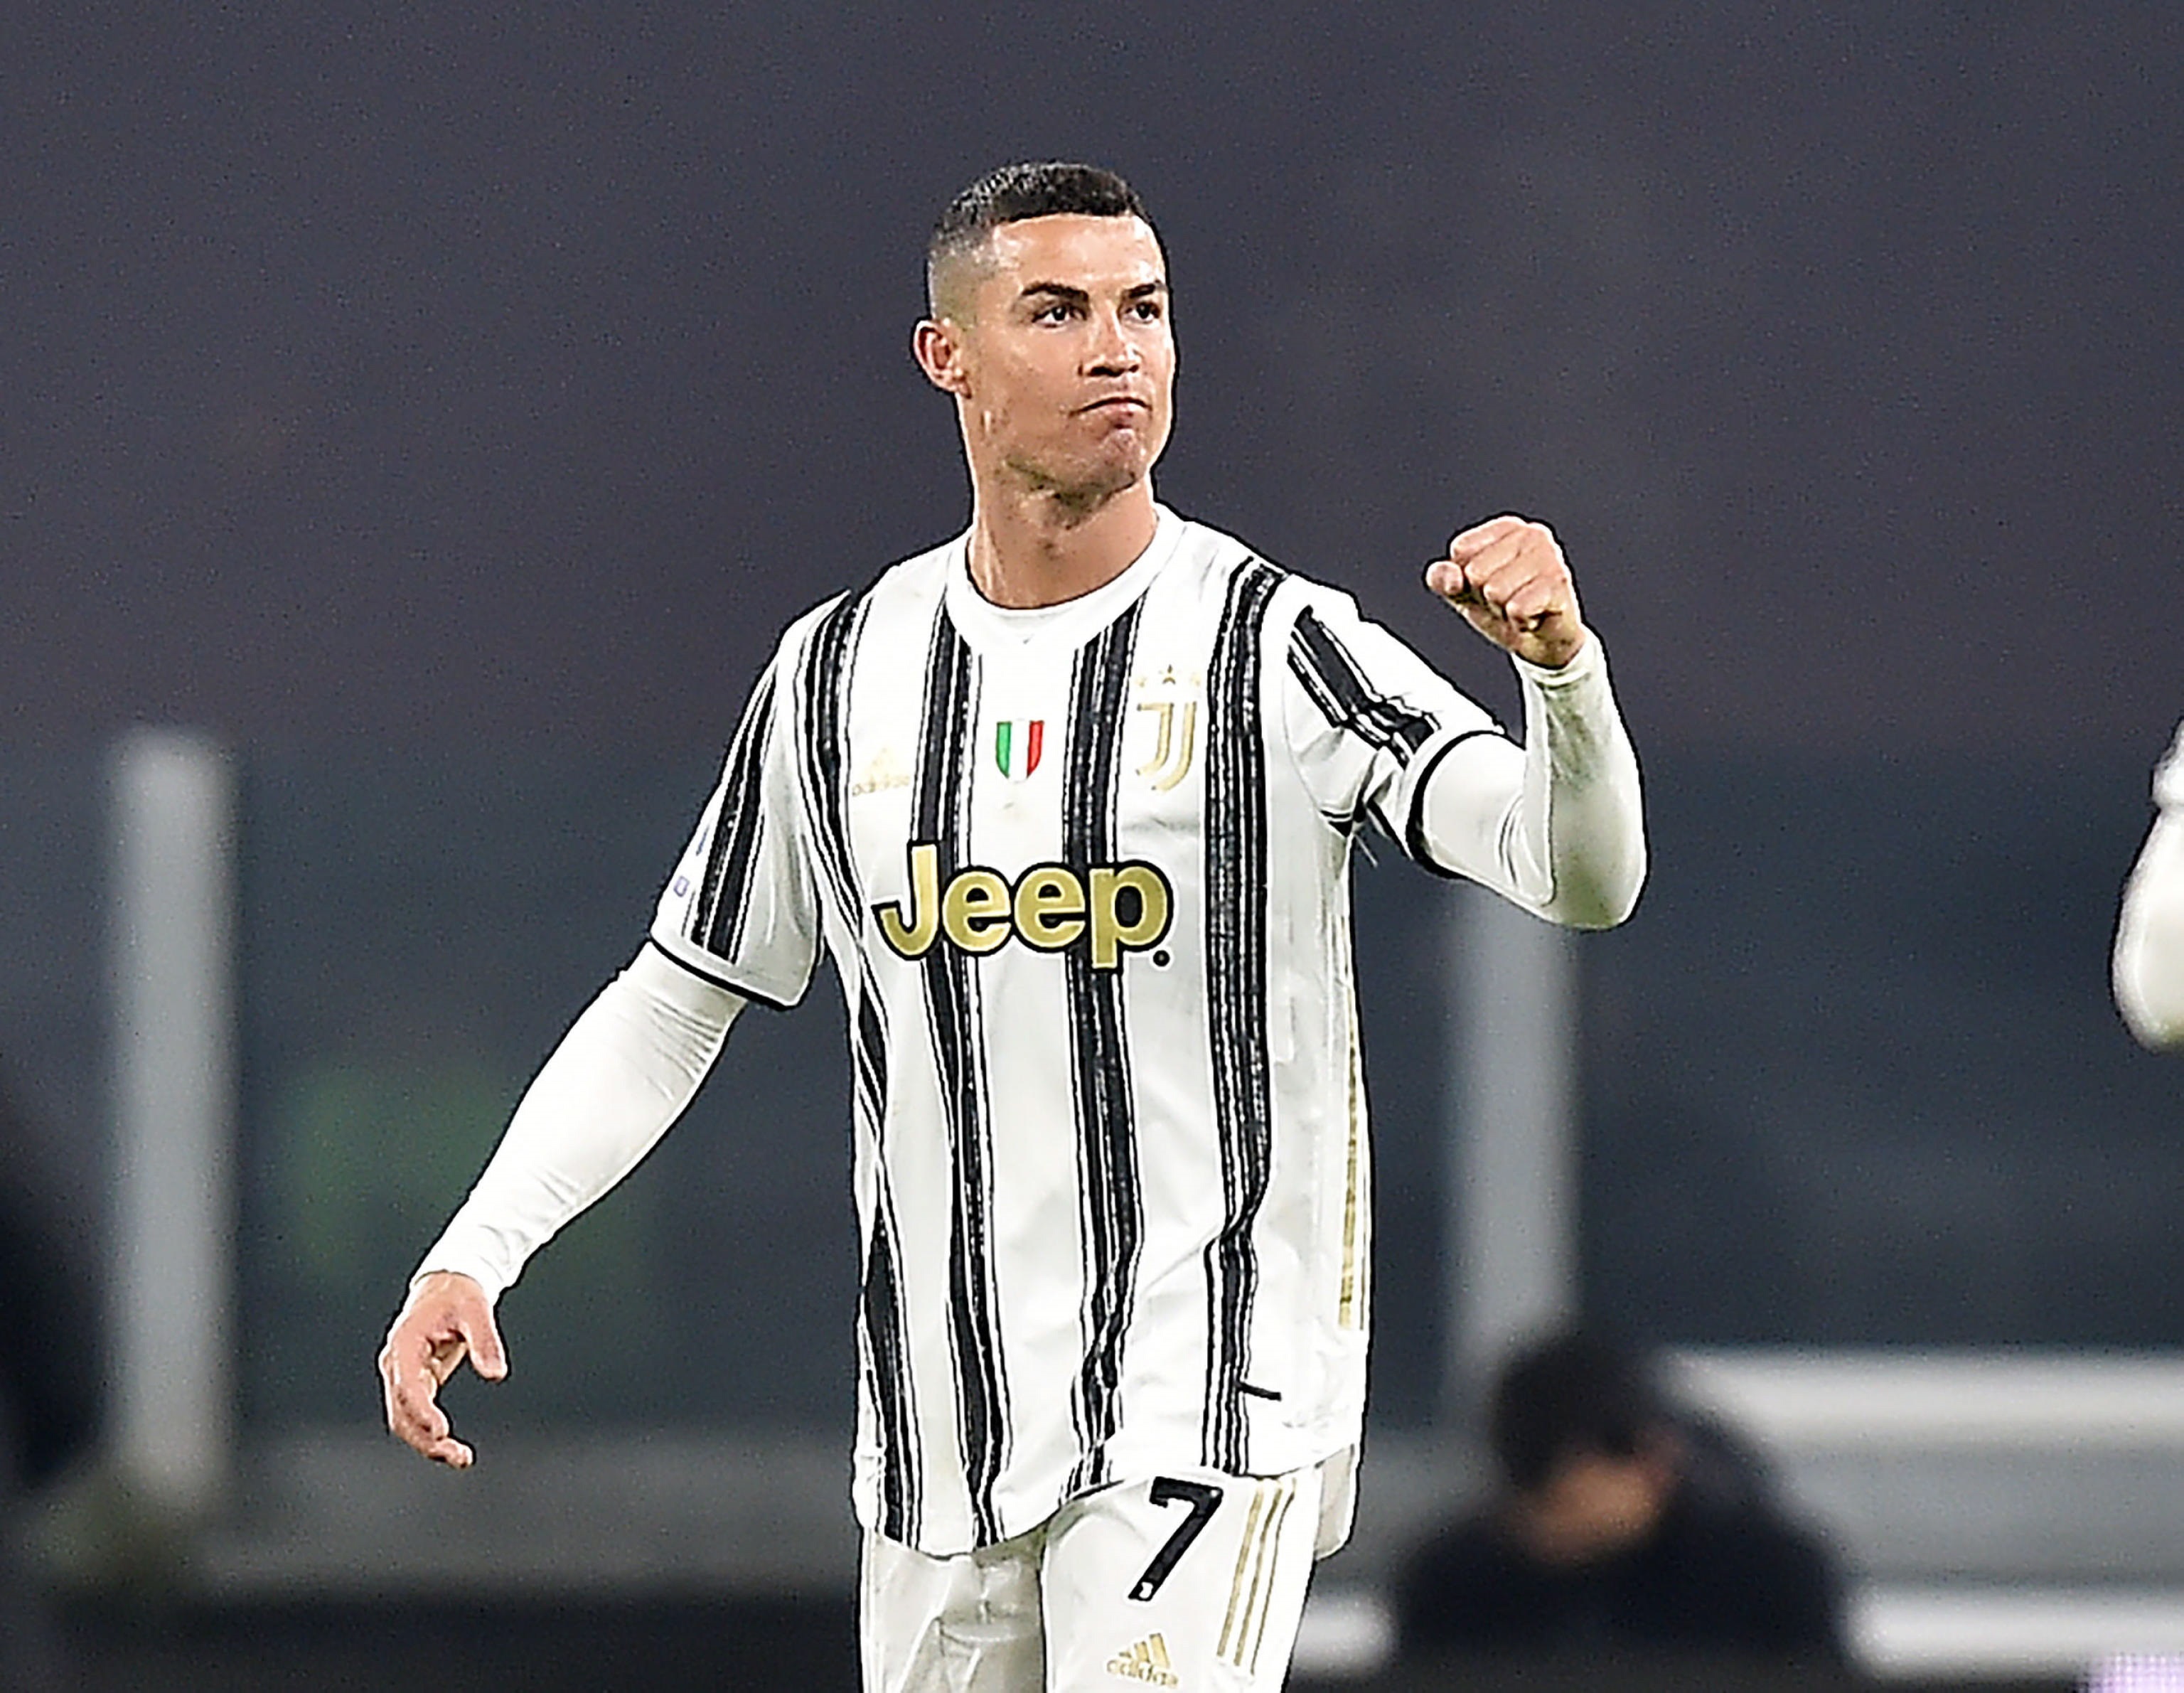 “Logramos grandes cosas”: Así se despidió Cristiano Ronaldo de la Juventus (VIDEO)